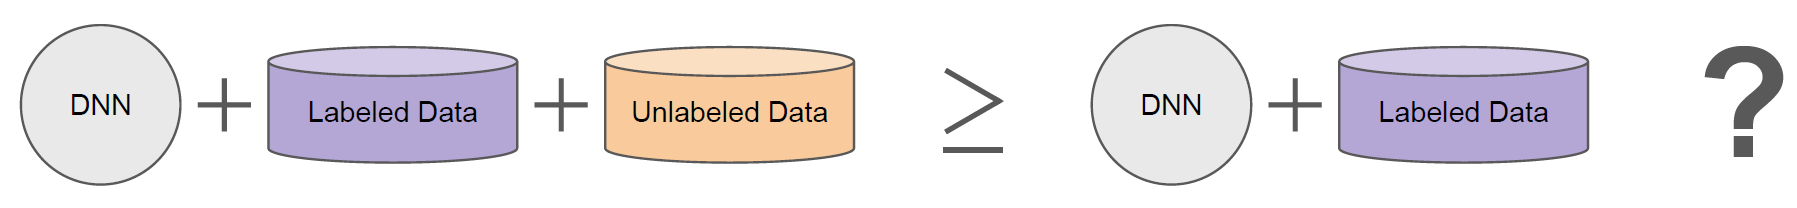 画像 1 は、ラベルなしの追加データを含むトレーニング済みモデルの図です。左から右に「DNN + ラベル付きデータ + ラベルなしデータ >= DNN + ラベル付きデータ」と説明されています。最後に疑問符が書かれています。 